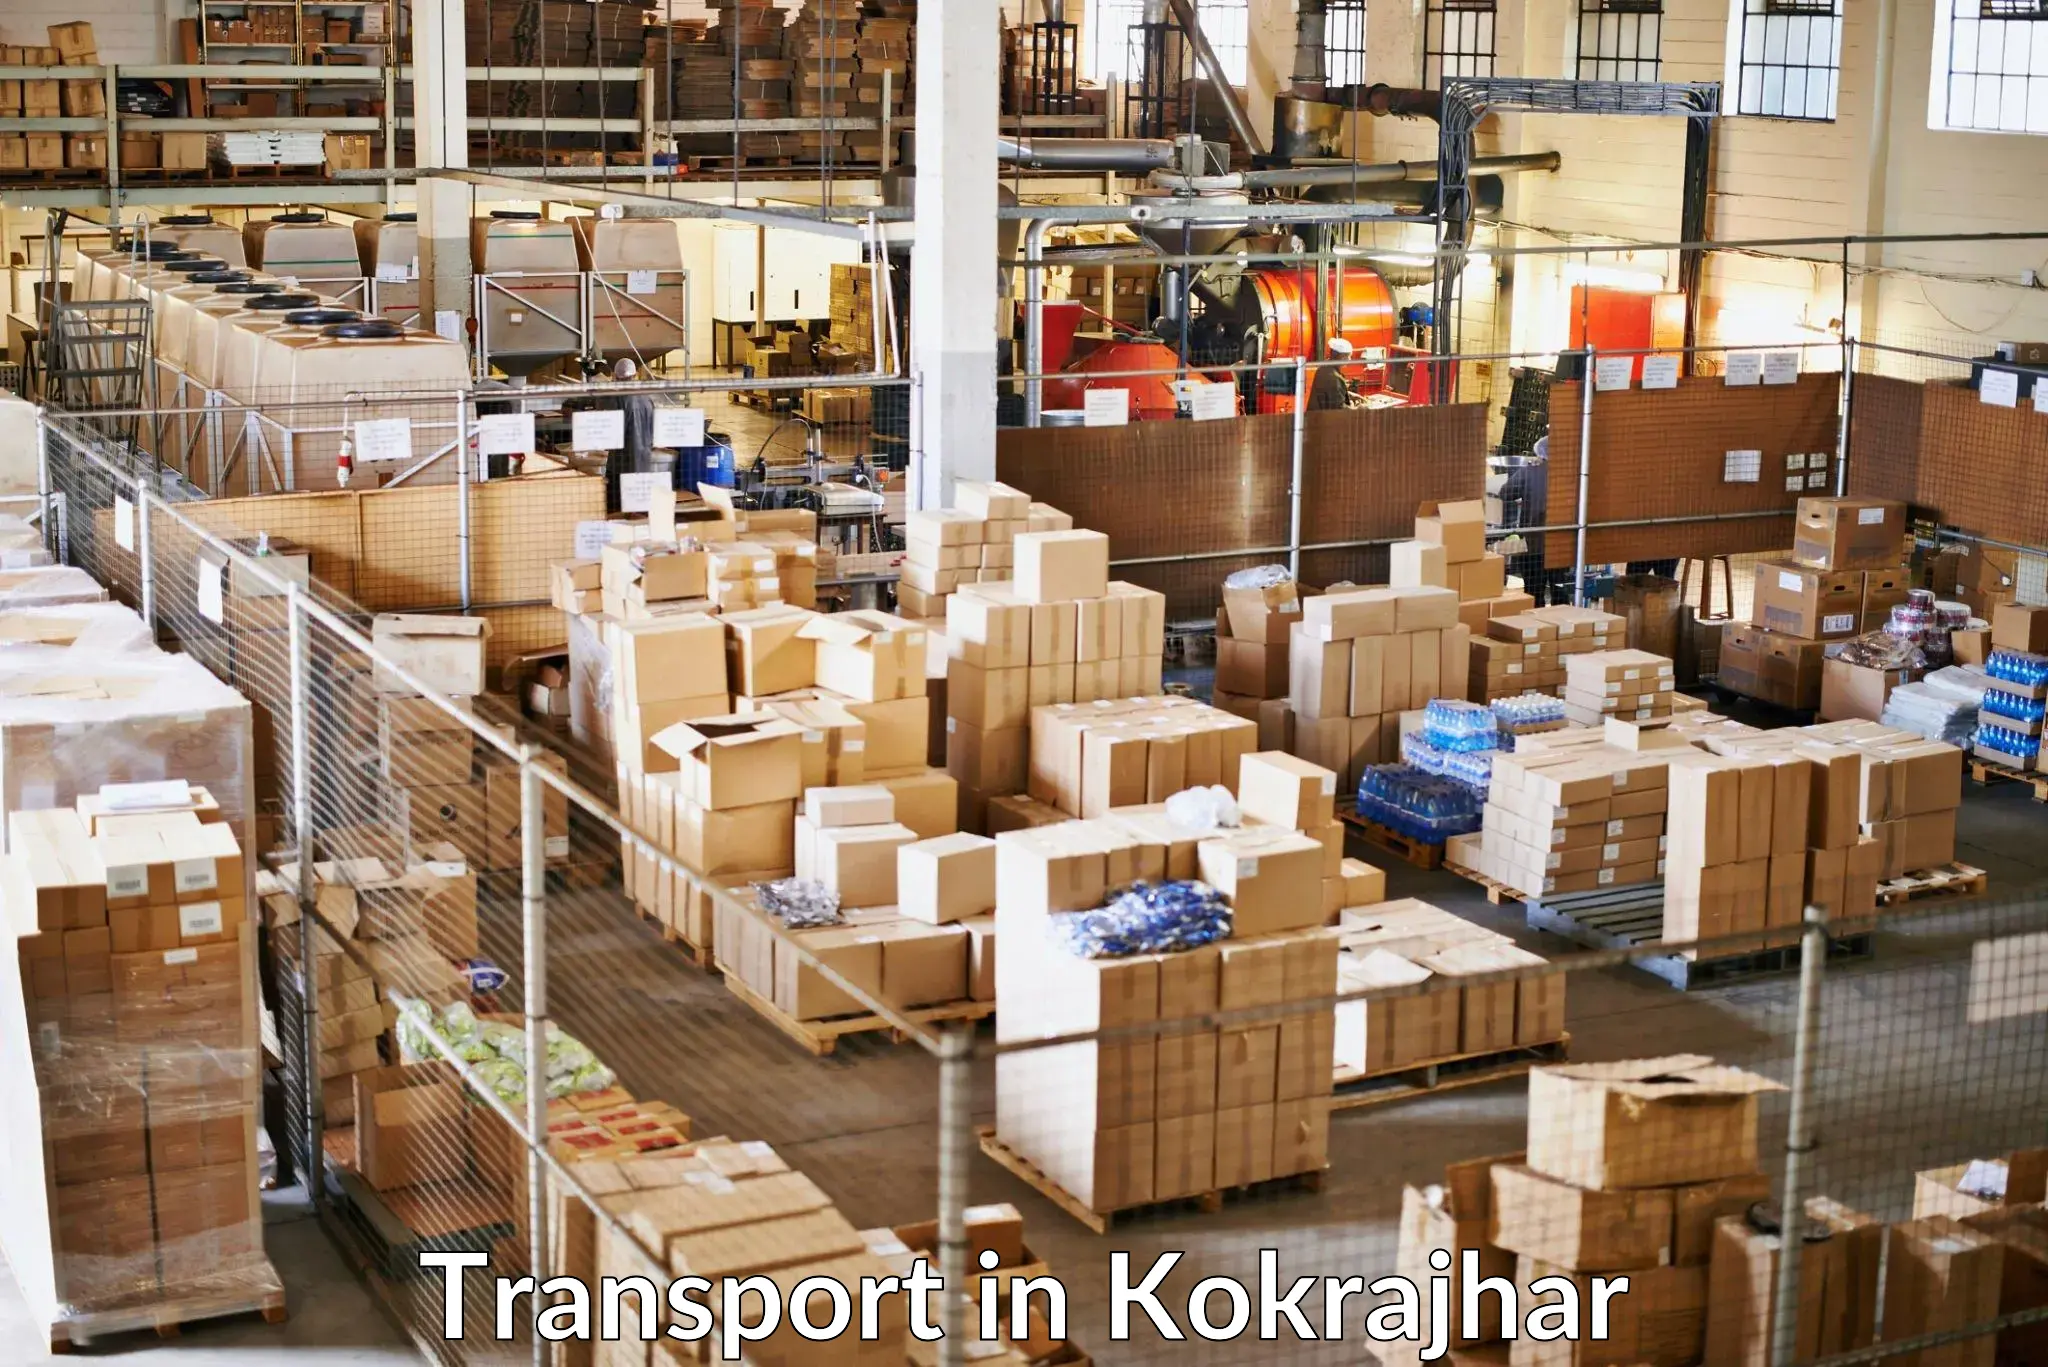 Road transport services in Kokrajhar